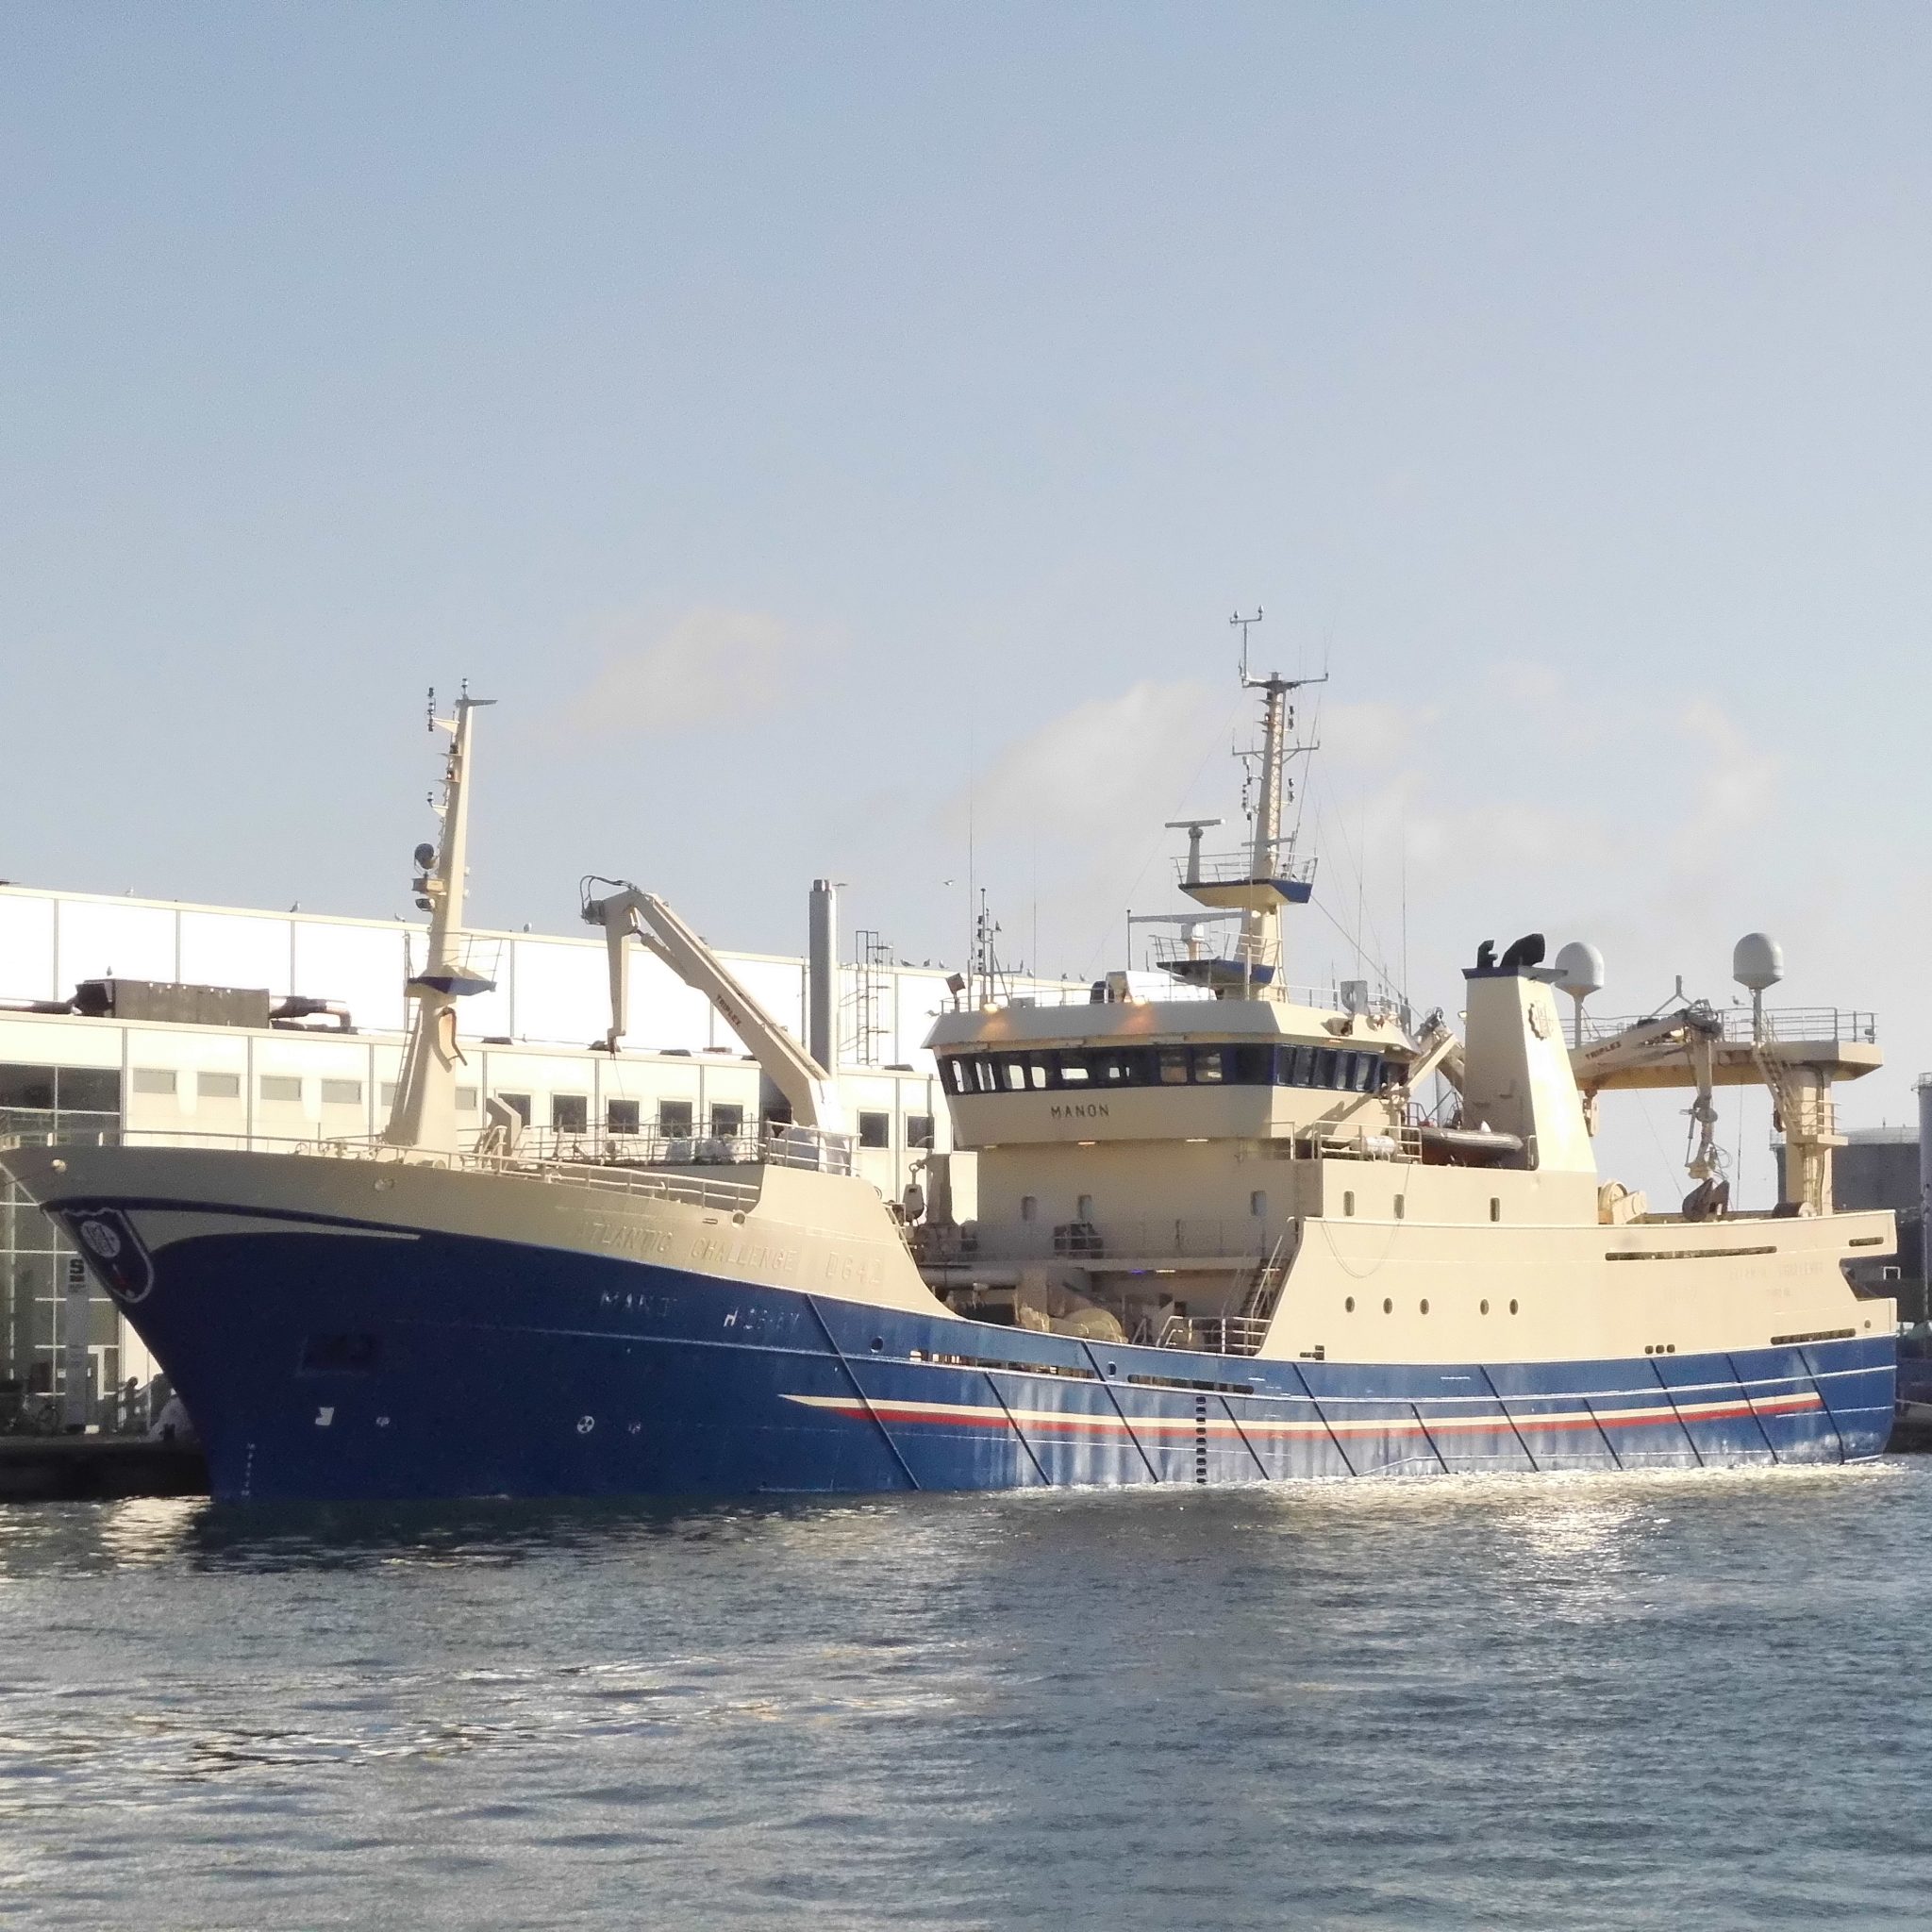 De Noorse trawler H-24-AV Manon is bijna elk jaar betrokken bij de visserij op maatjesharing. (Foto W.M. den Heijer)